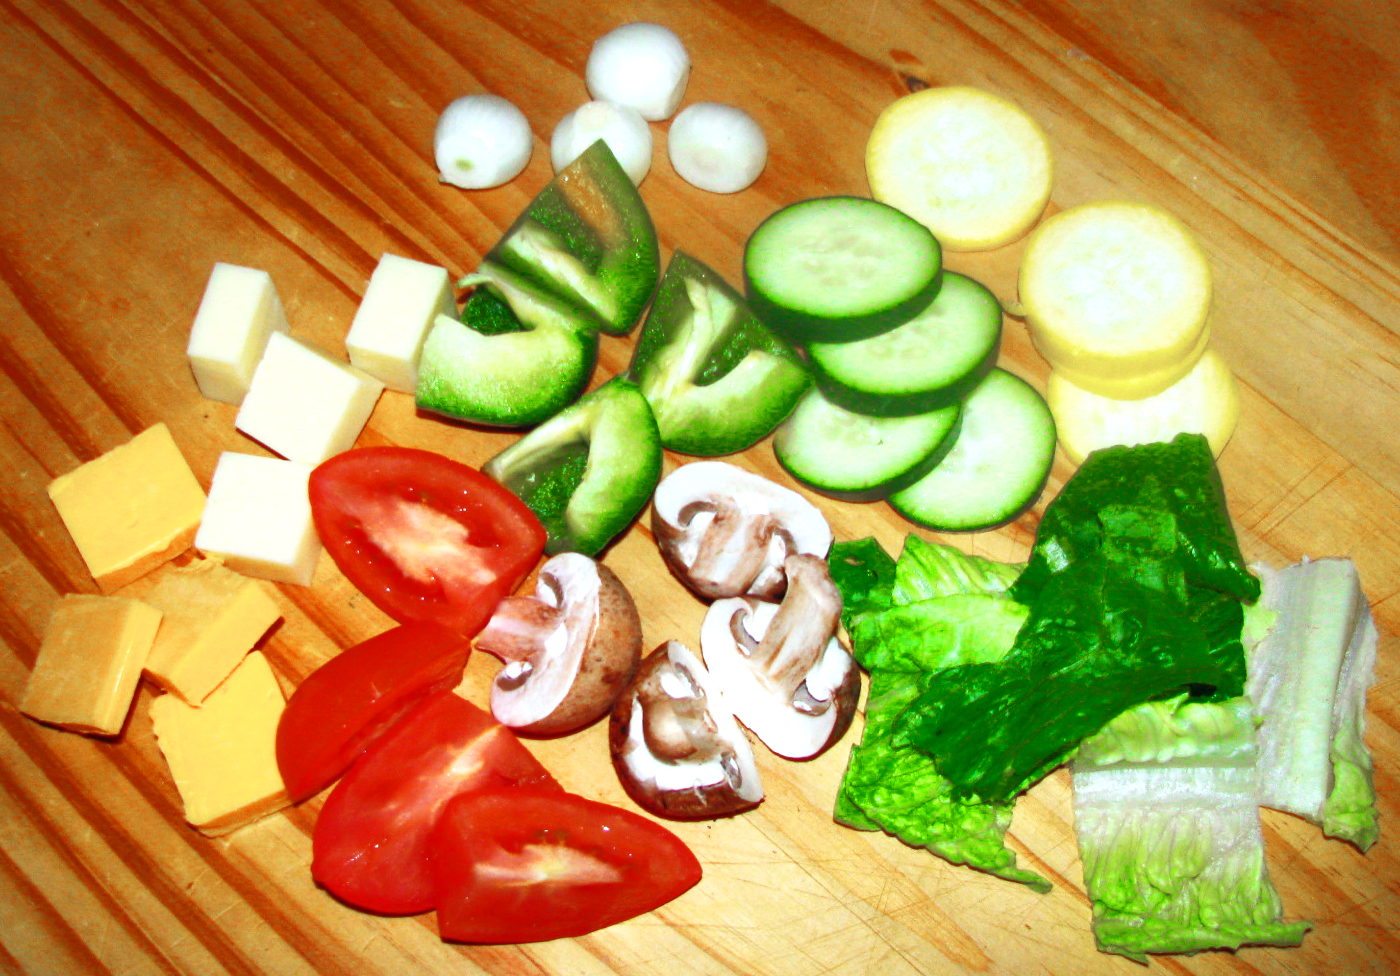 Skewered Salad Ingredients